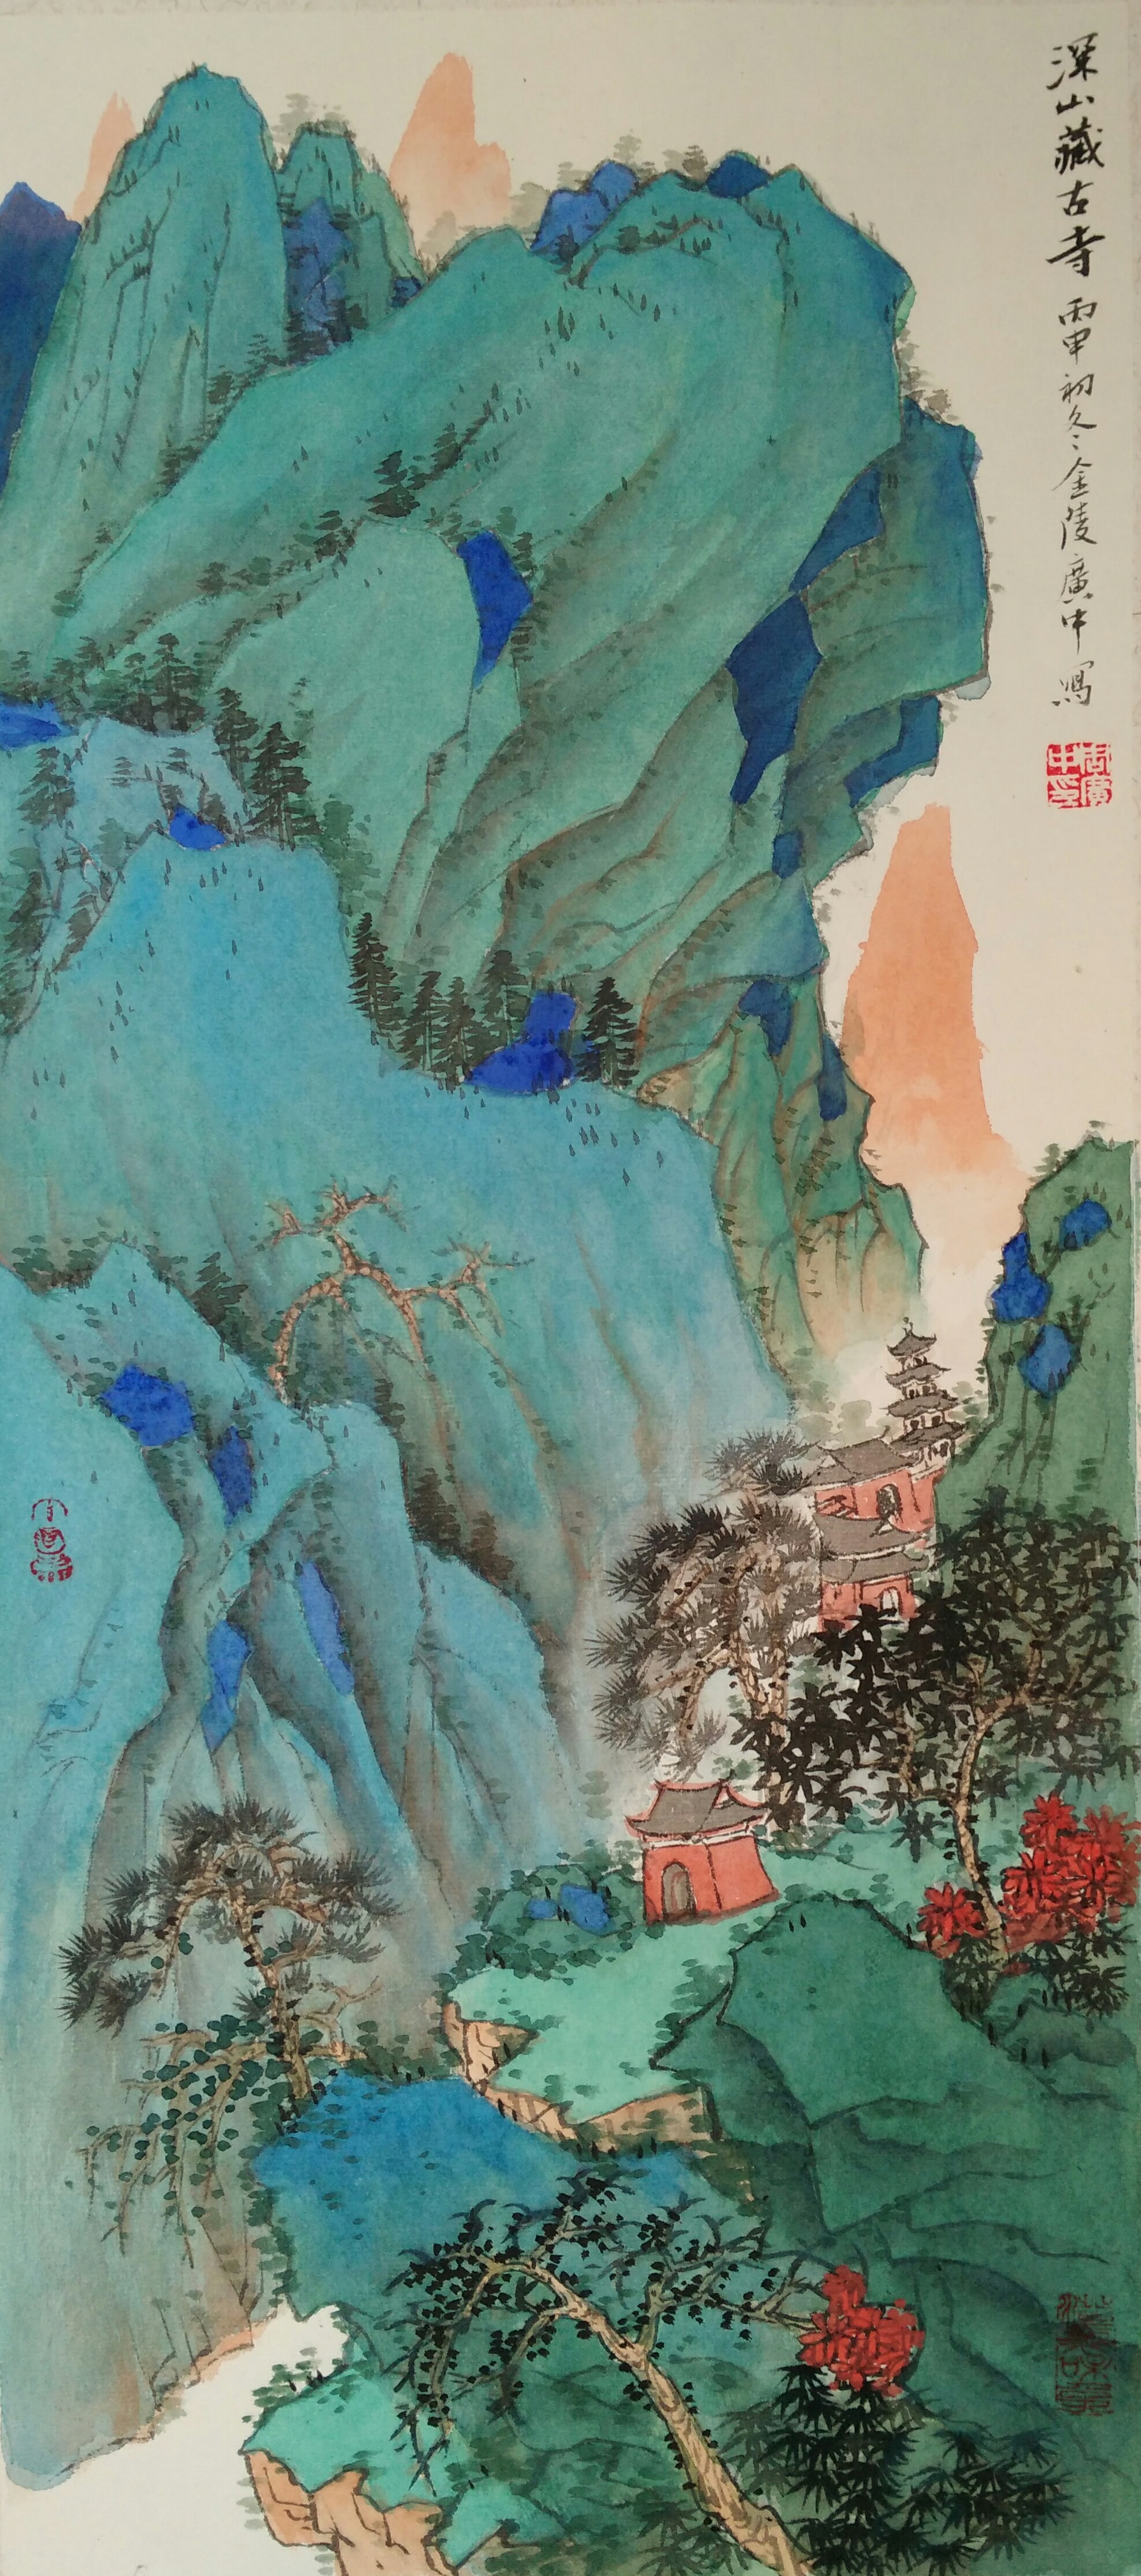 画中贵族—青绿山水周广忠作品系列之一